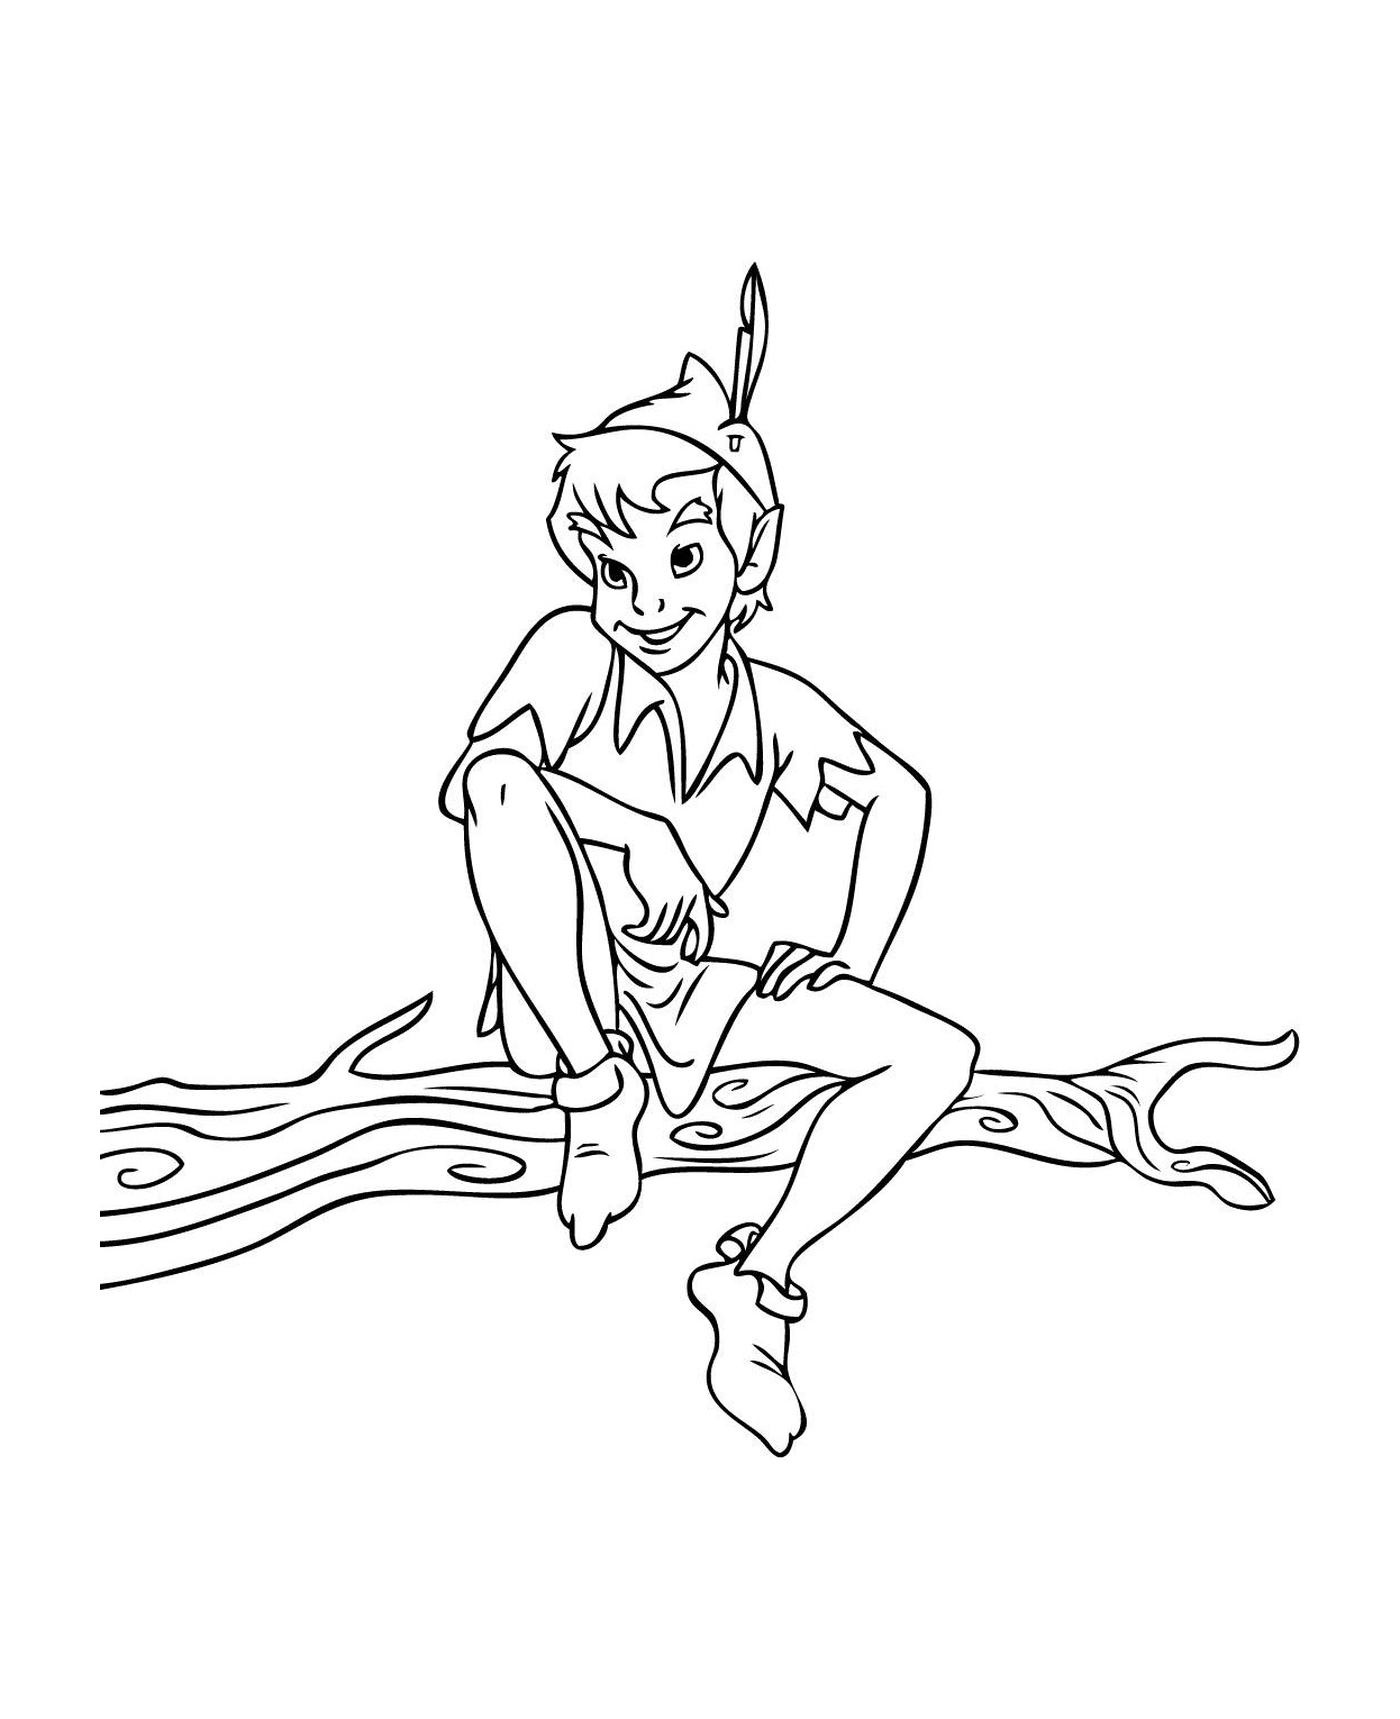  Peter Pan sentado em uma árvore 